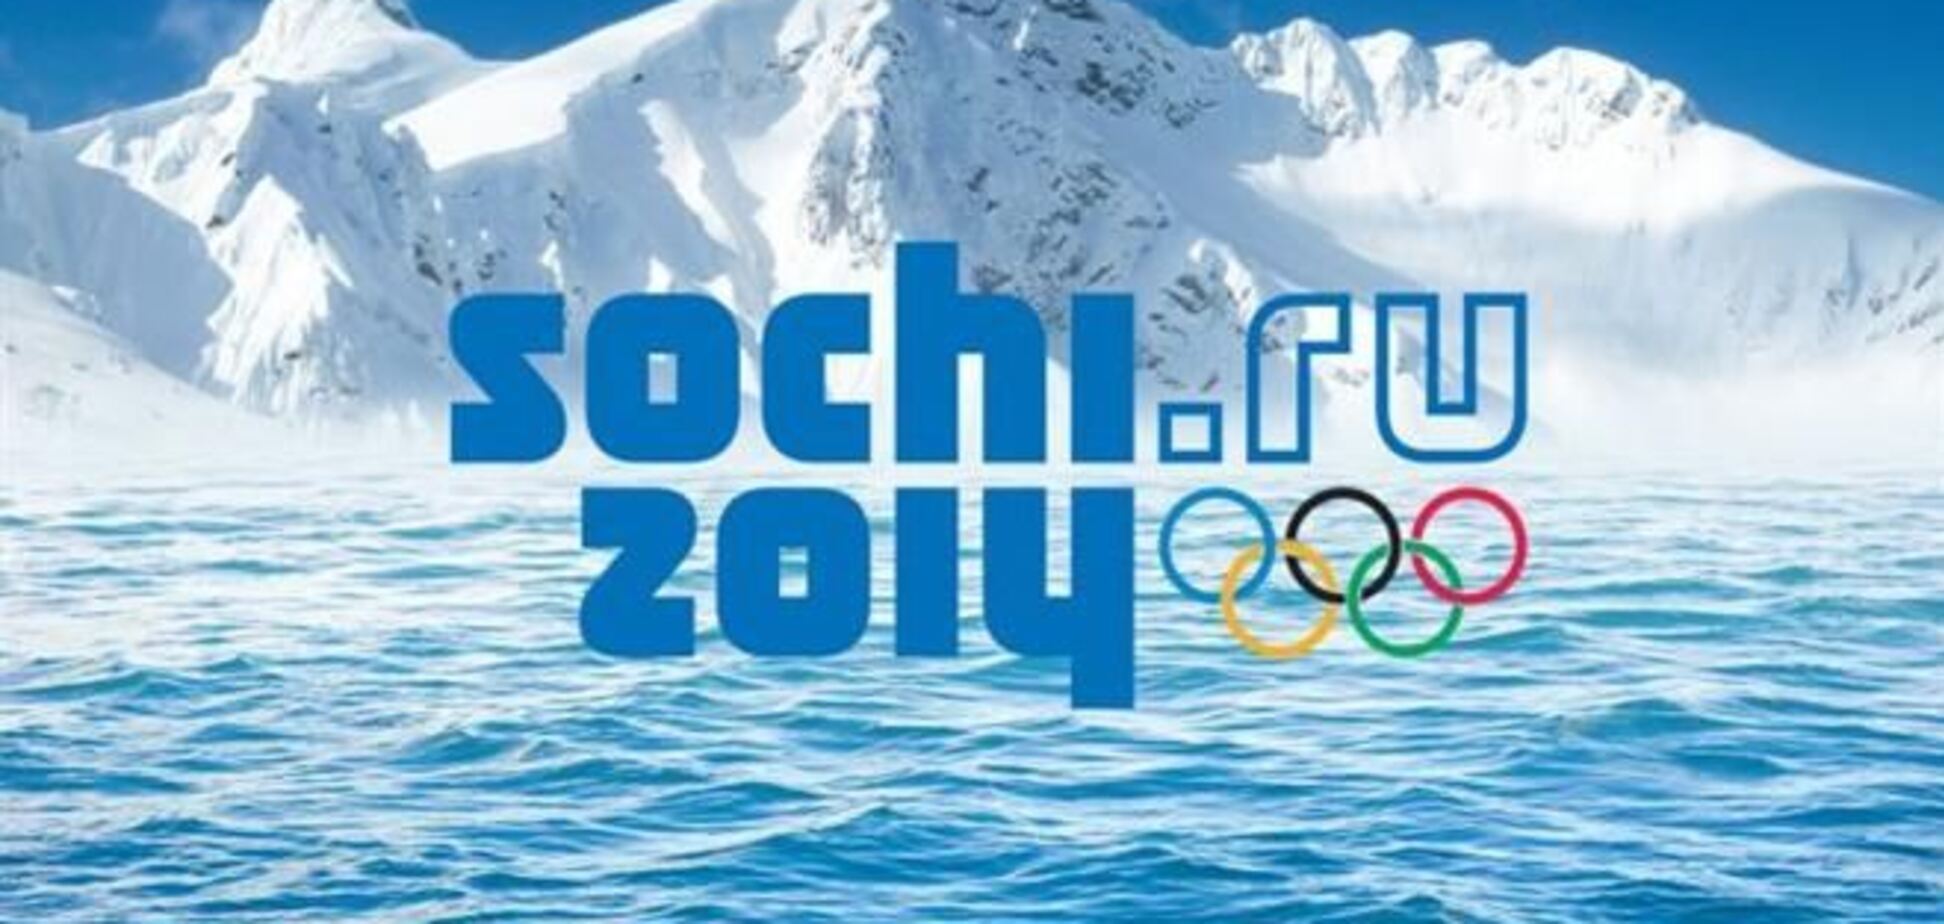 Названы премиальные российским спортсменам за медали Олимпиады в Сочи